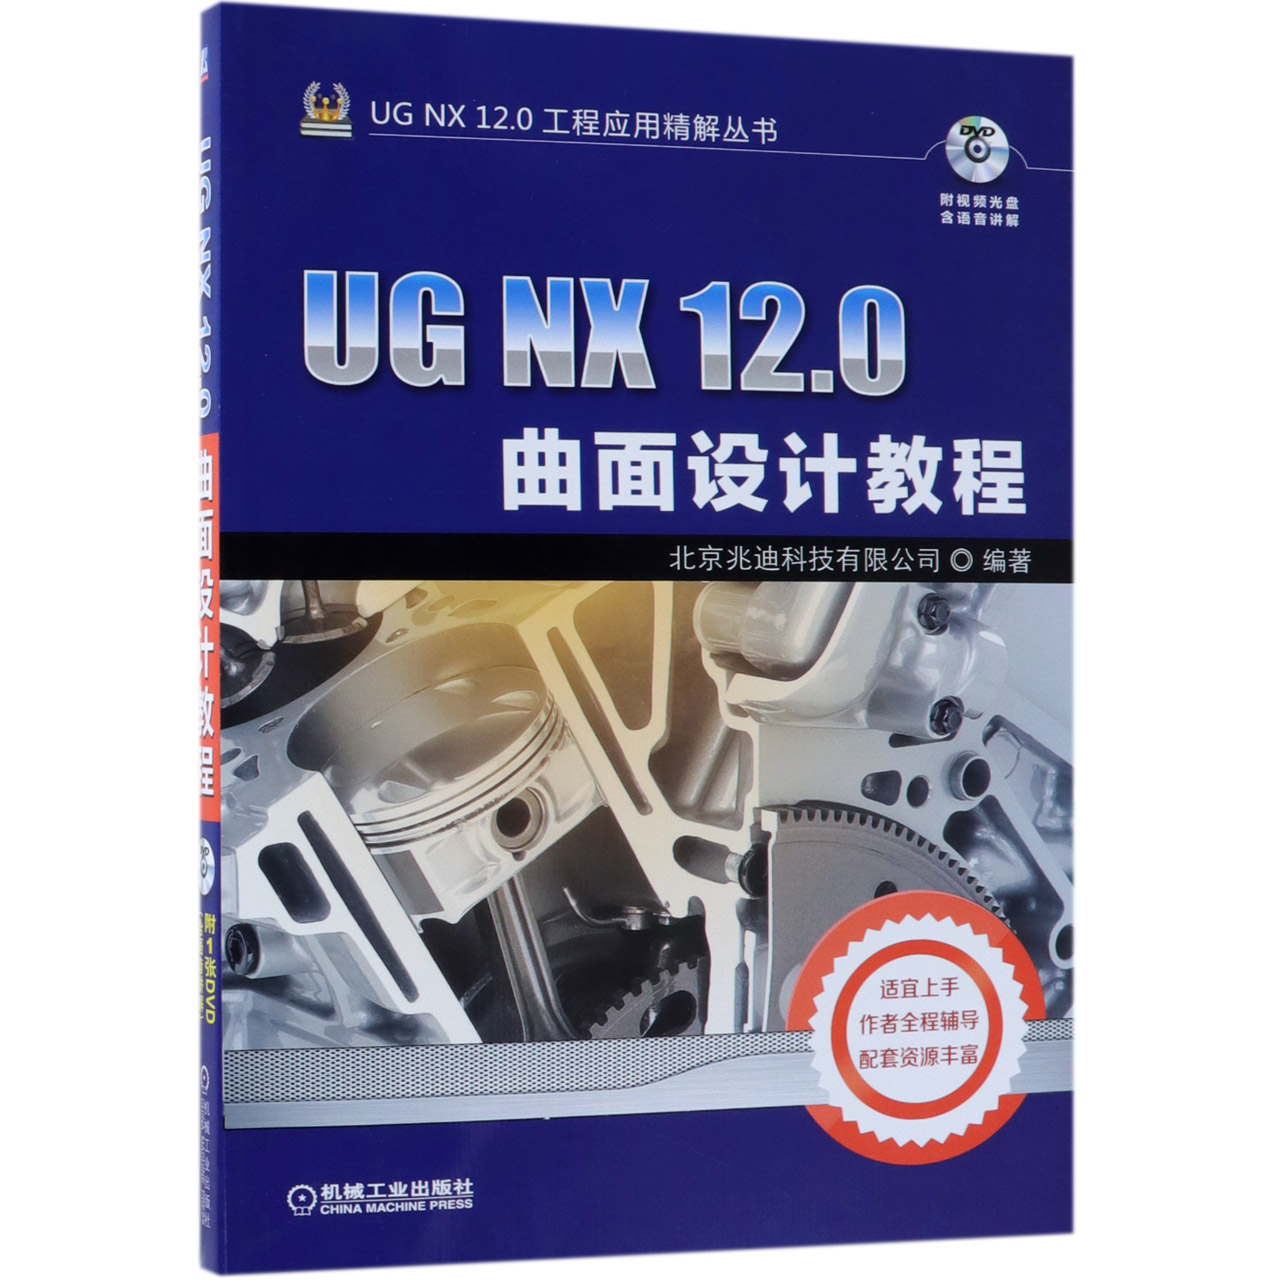 【现货】UGNX12.0曲面设计教程(附光盘)/UGNX12.0工程应用精解丛书北京兆迪科技有限公司9787111614142机械工业出版社